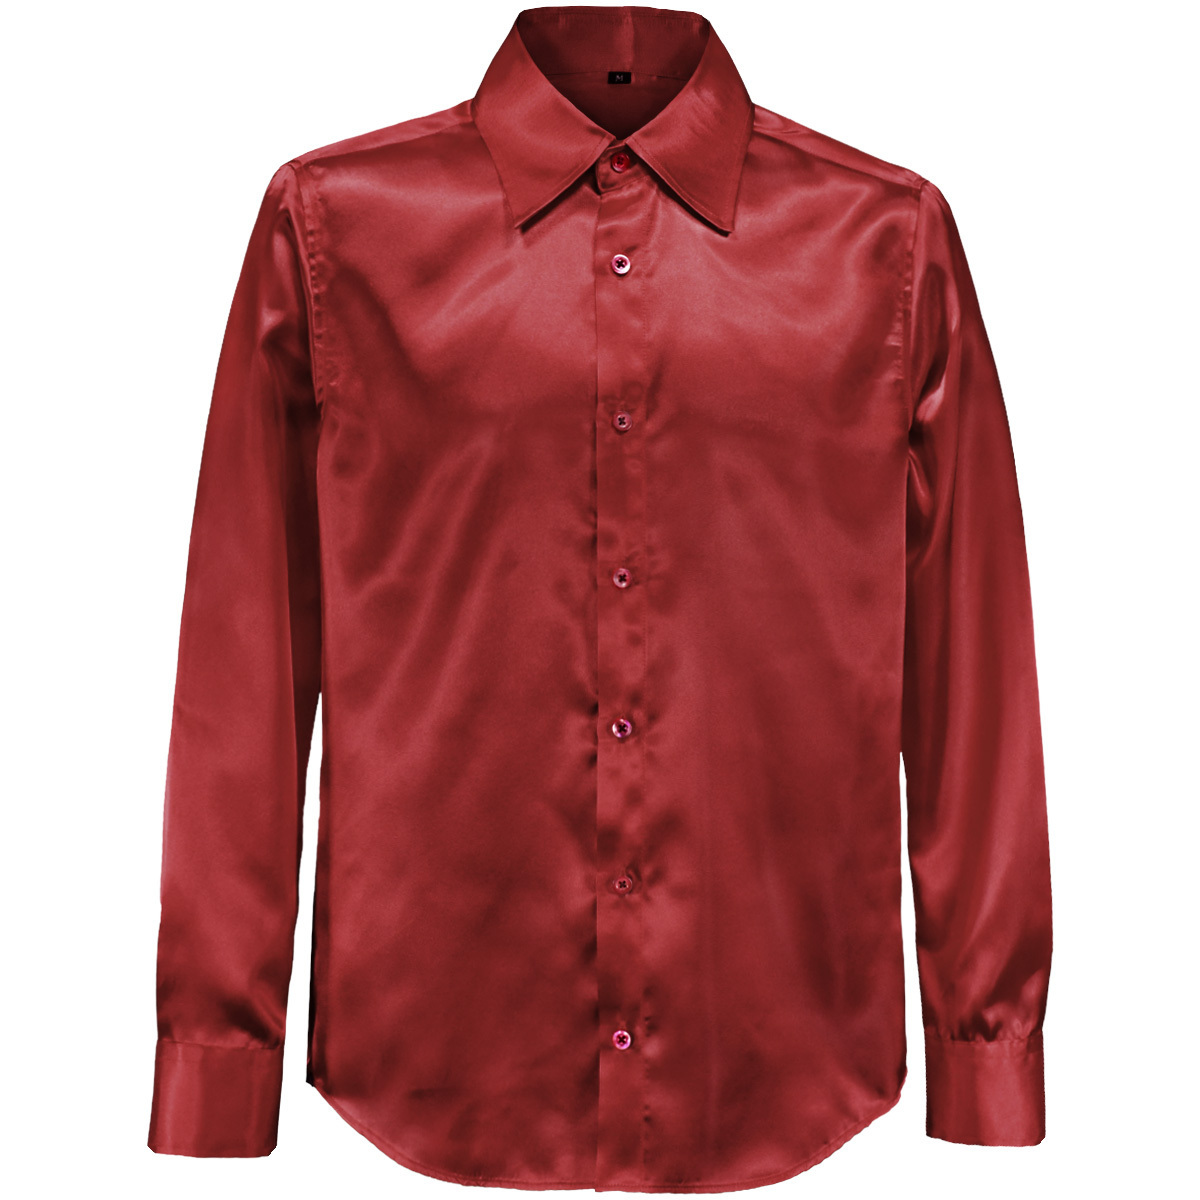  кошка pohs возможно *141405-re BLACK VARIA глянец атлас одноцветный тонкий постоянный цветное платье рубашка мужской ( wine red красный ) SS костюм 